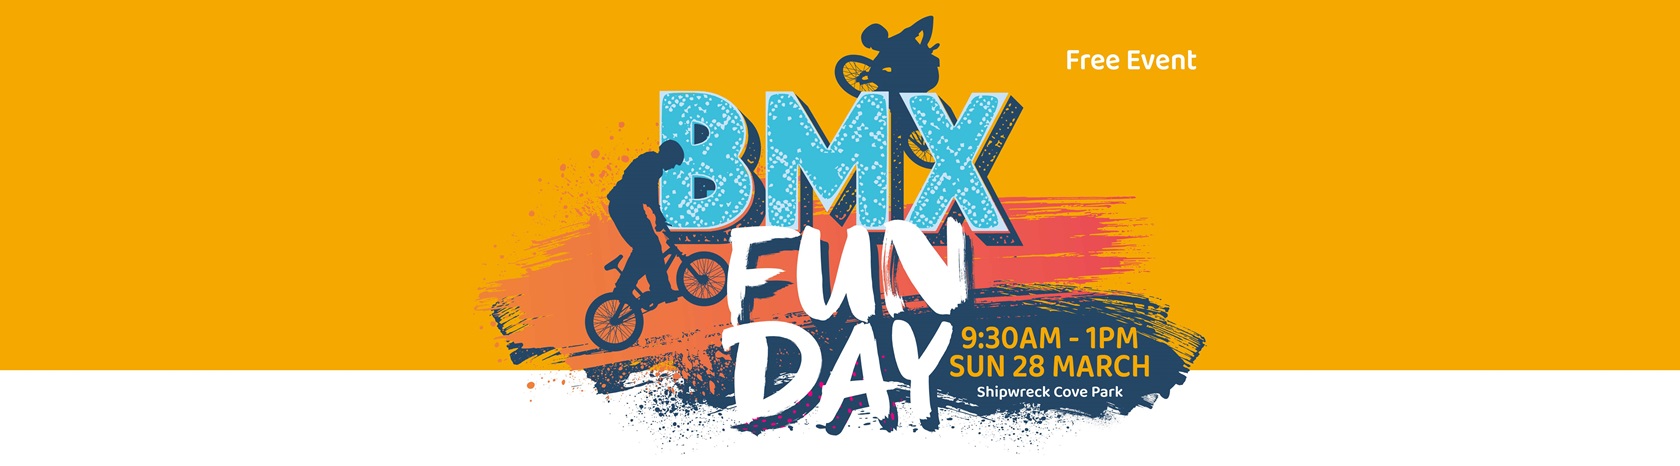 Golden Bay BMX Event